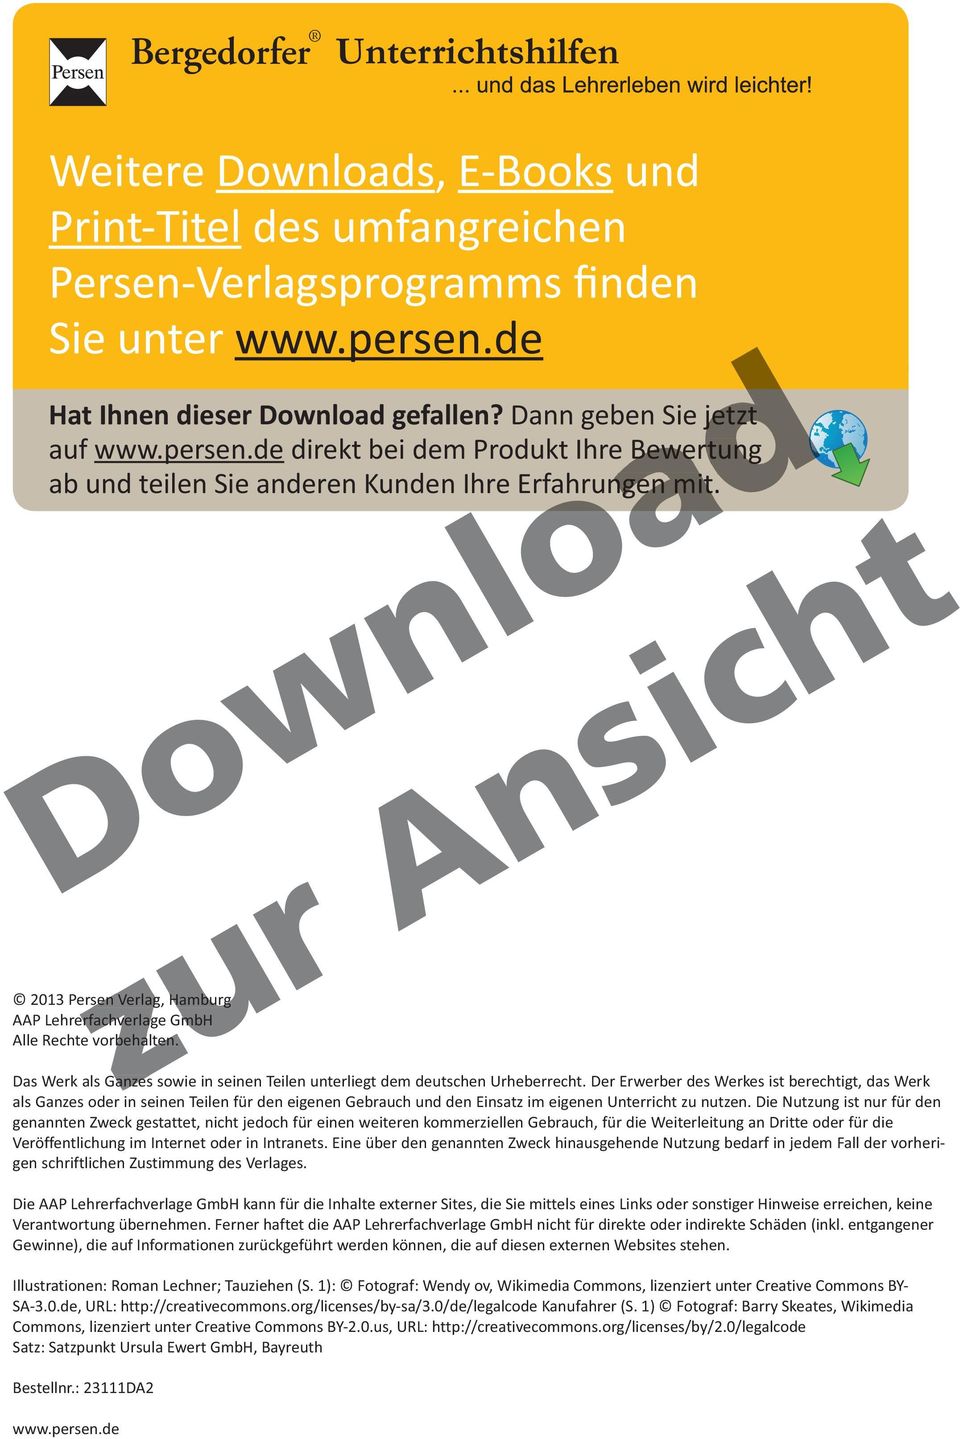 2013 Persen Verlag, Hamburg AAP Lehrerfachverlage erfachverlag GmbH Alle Rechte vorbehalten. Das Werk als Ganzes sowie in seinen Teilen unterliegt dem deutschen Urheberrecht.